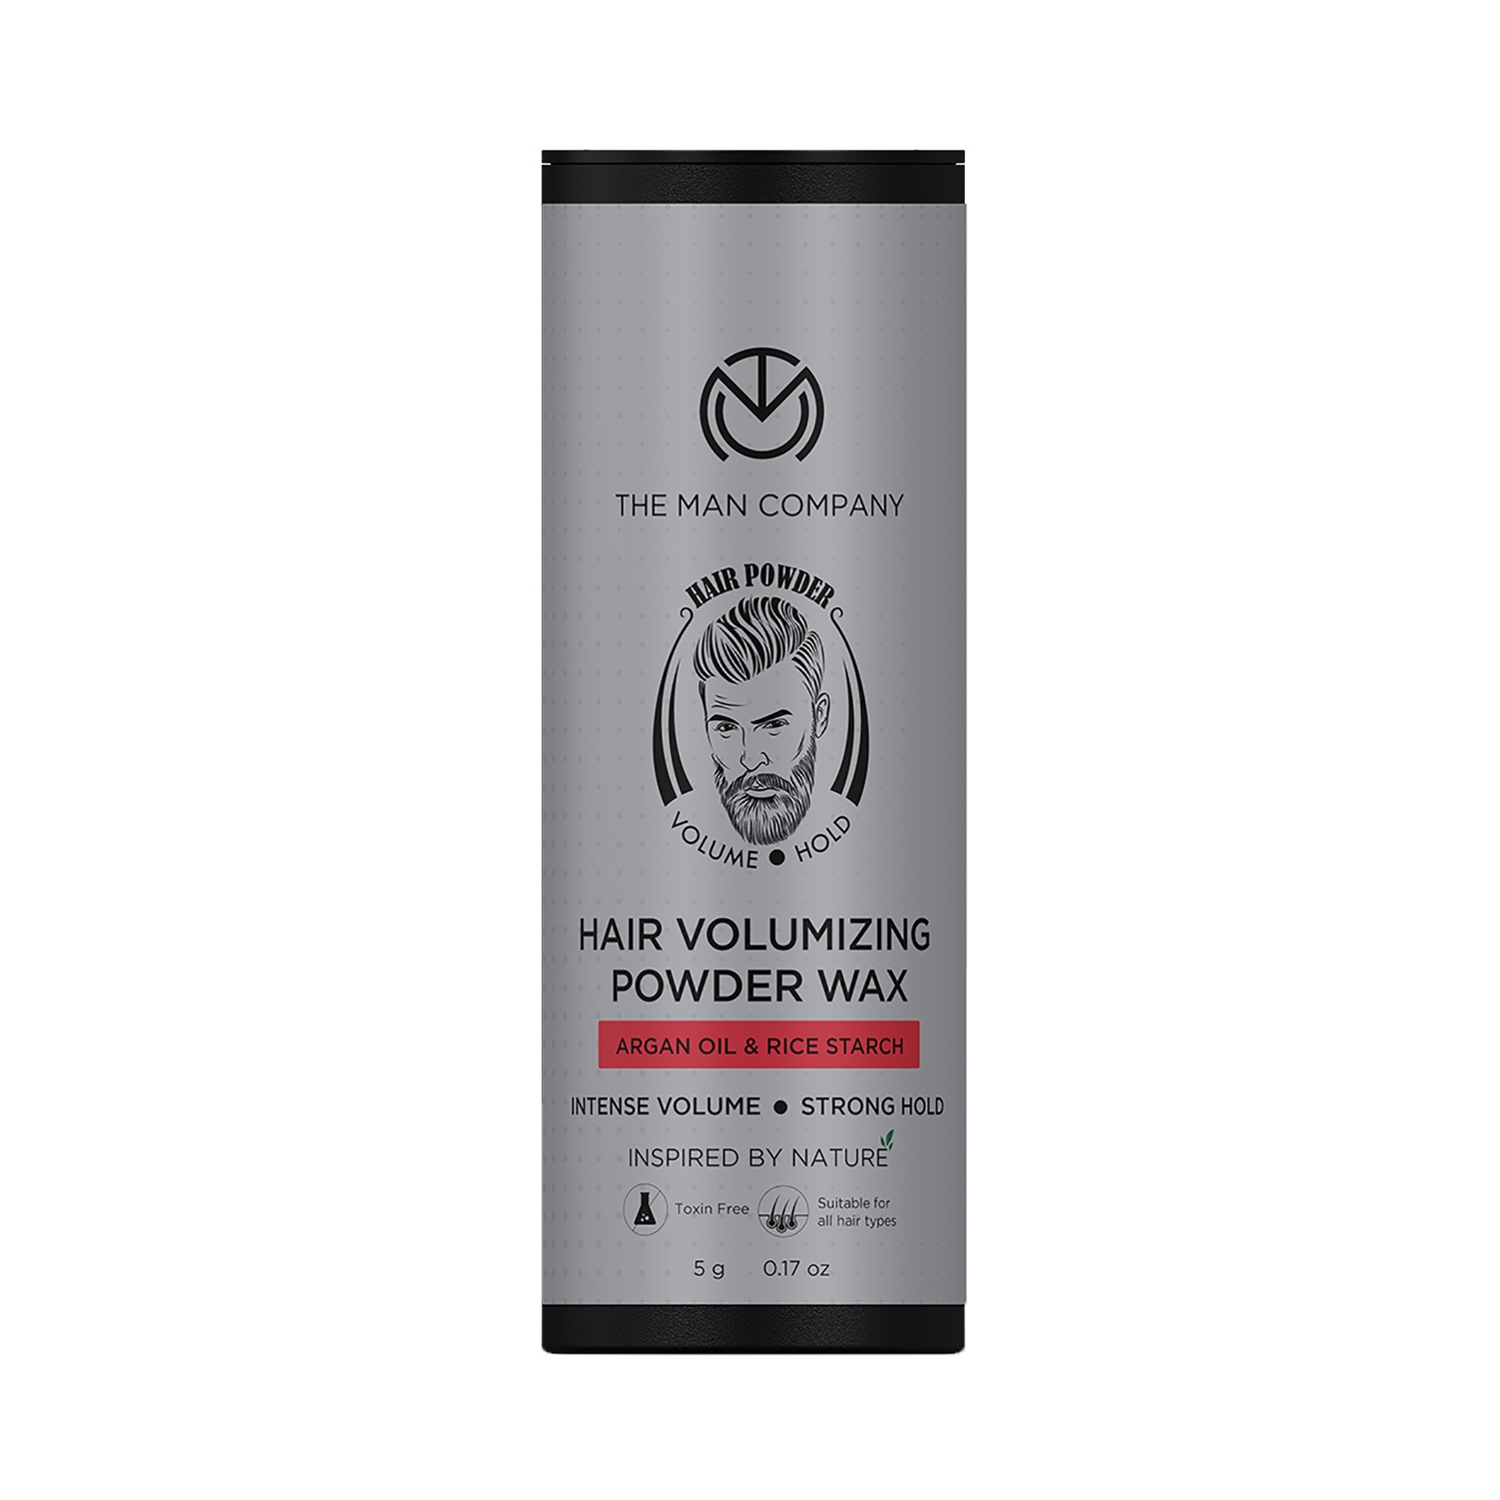 The Man Company | The Man Company Hair Volumizing Powder Wax (5g)